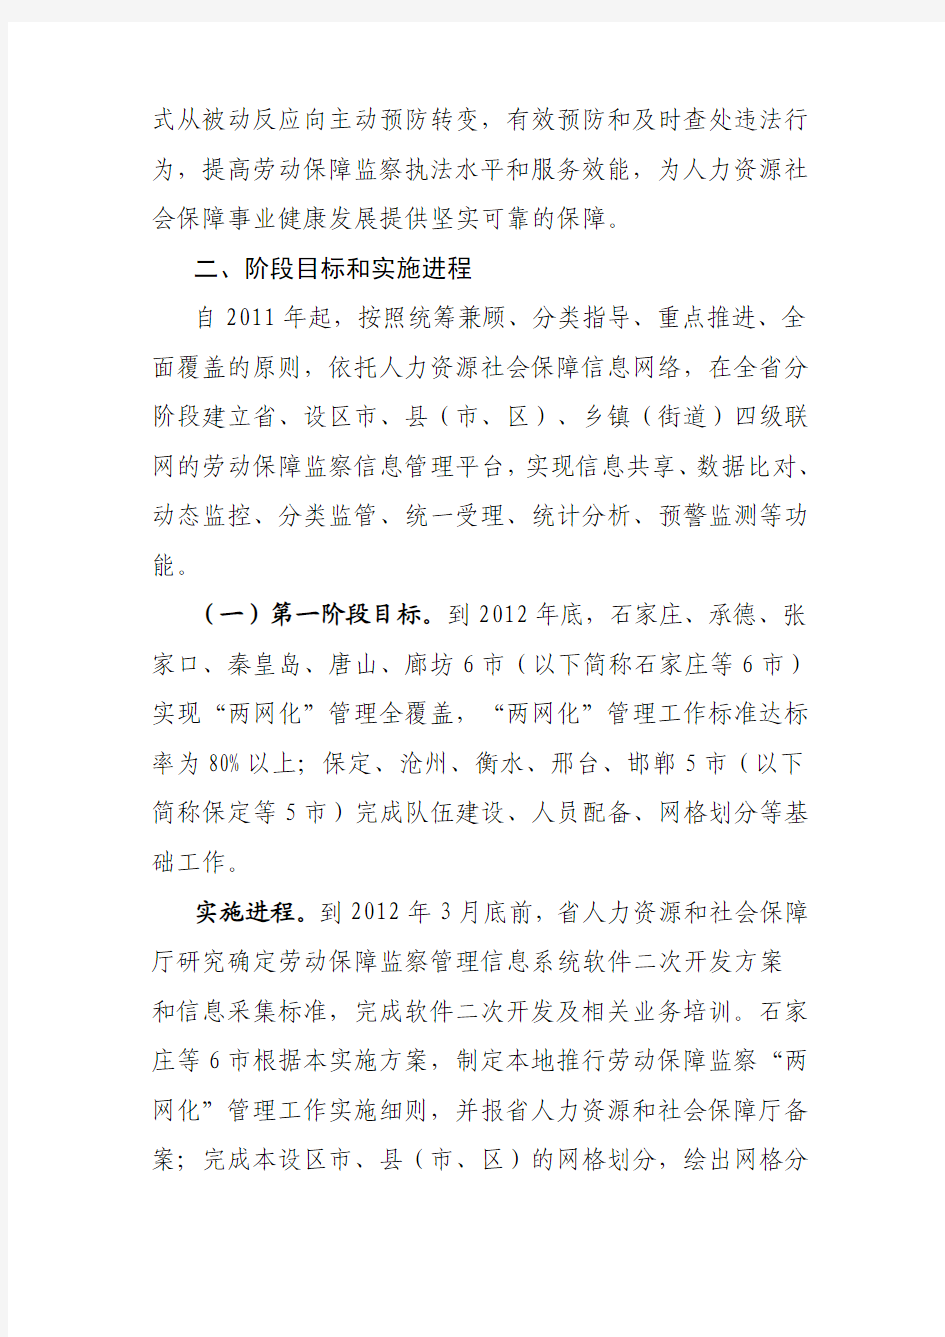 河北省全面推进劳动保障监察两网化管理工作实施方案